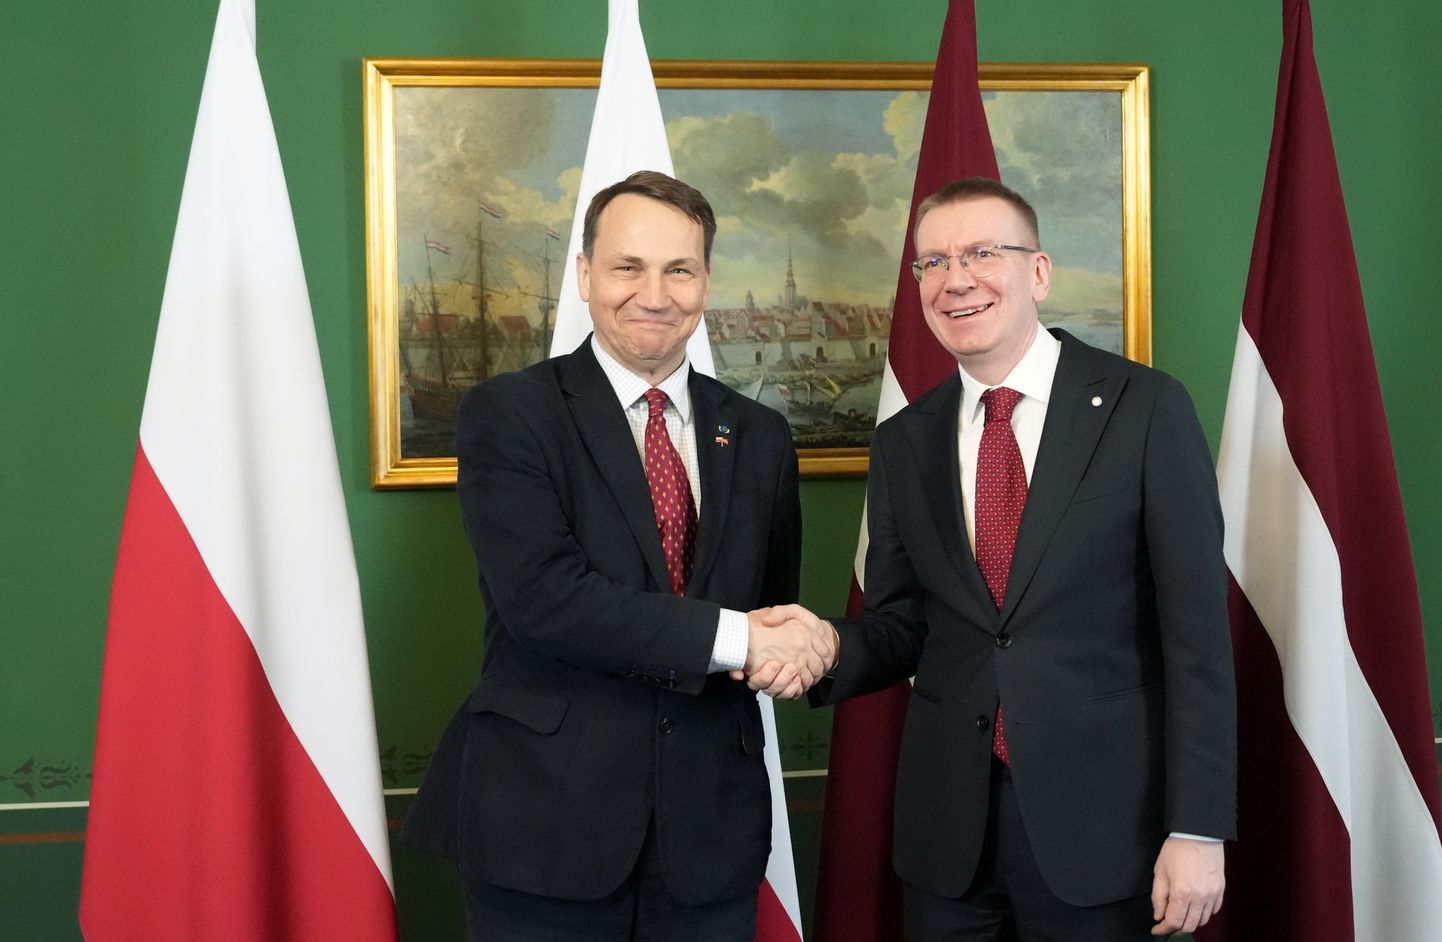 Valsts prezidents Edgars Rinkēvičs (no labās) un Polijas ārlietu ministrs Radislavs Sikorskis tikšanās laikā Rīgas pilī.